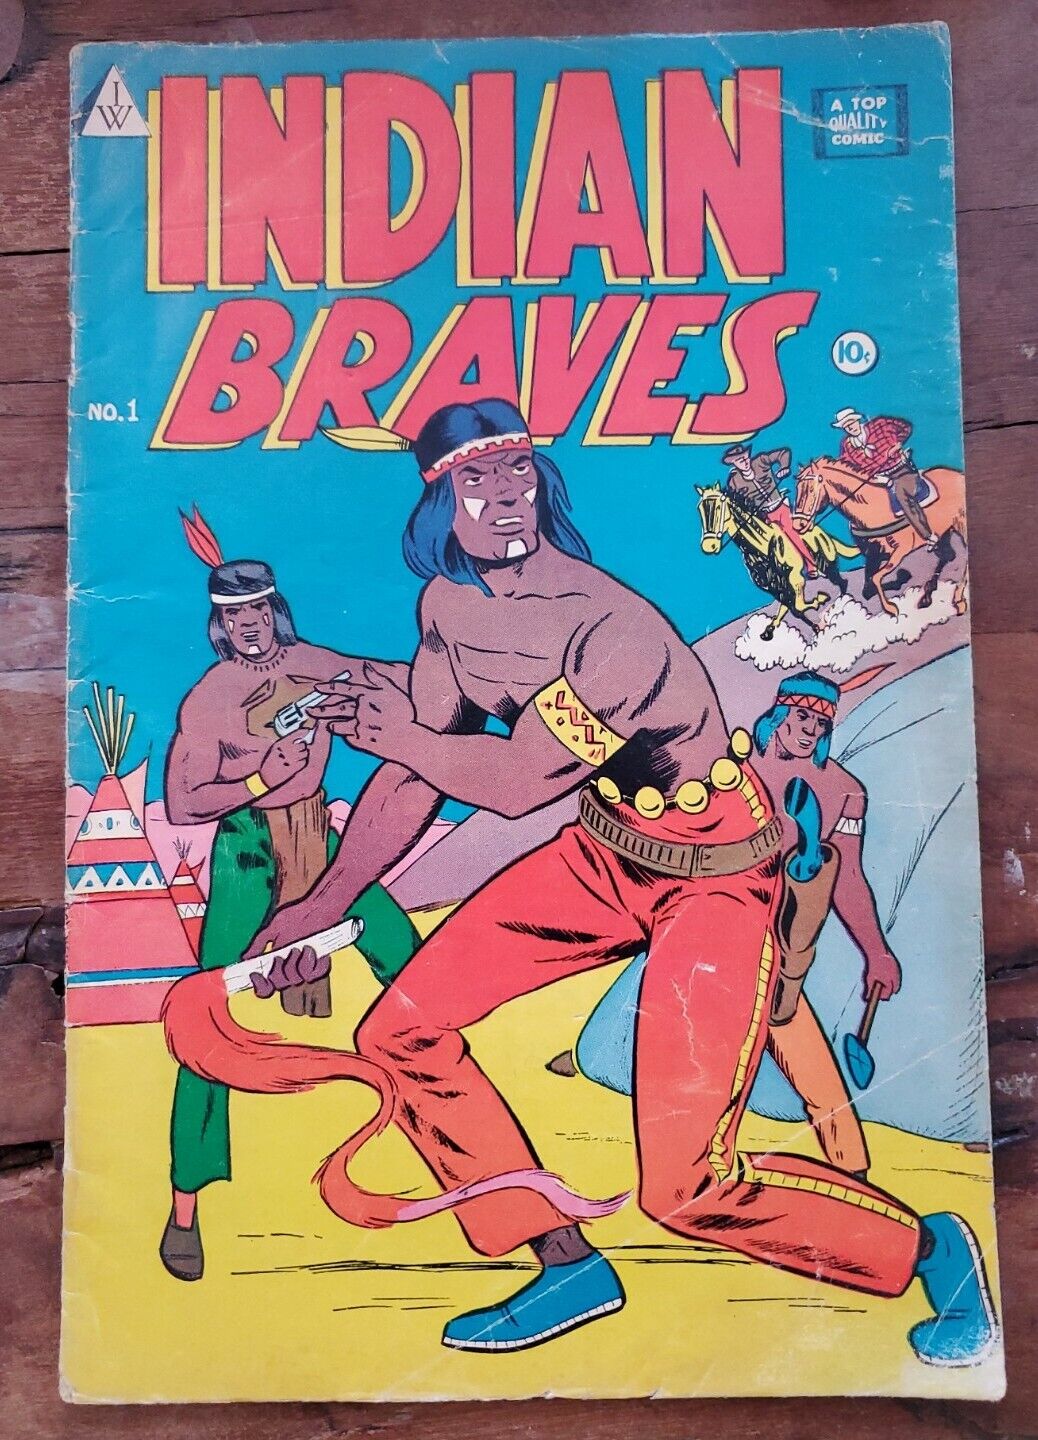 I.W. Enterprises Indian Braves #1 1964 Reprints Indian Braves #4 Sep 1951 VG